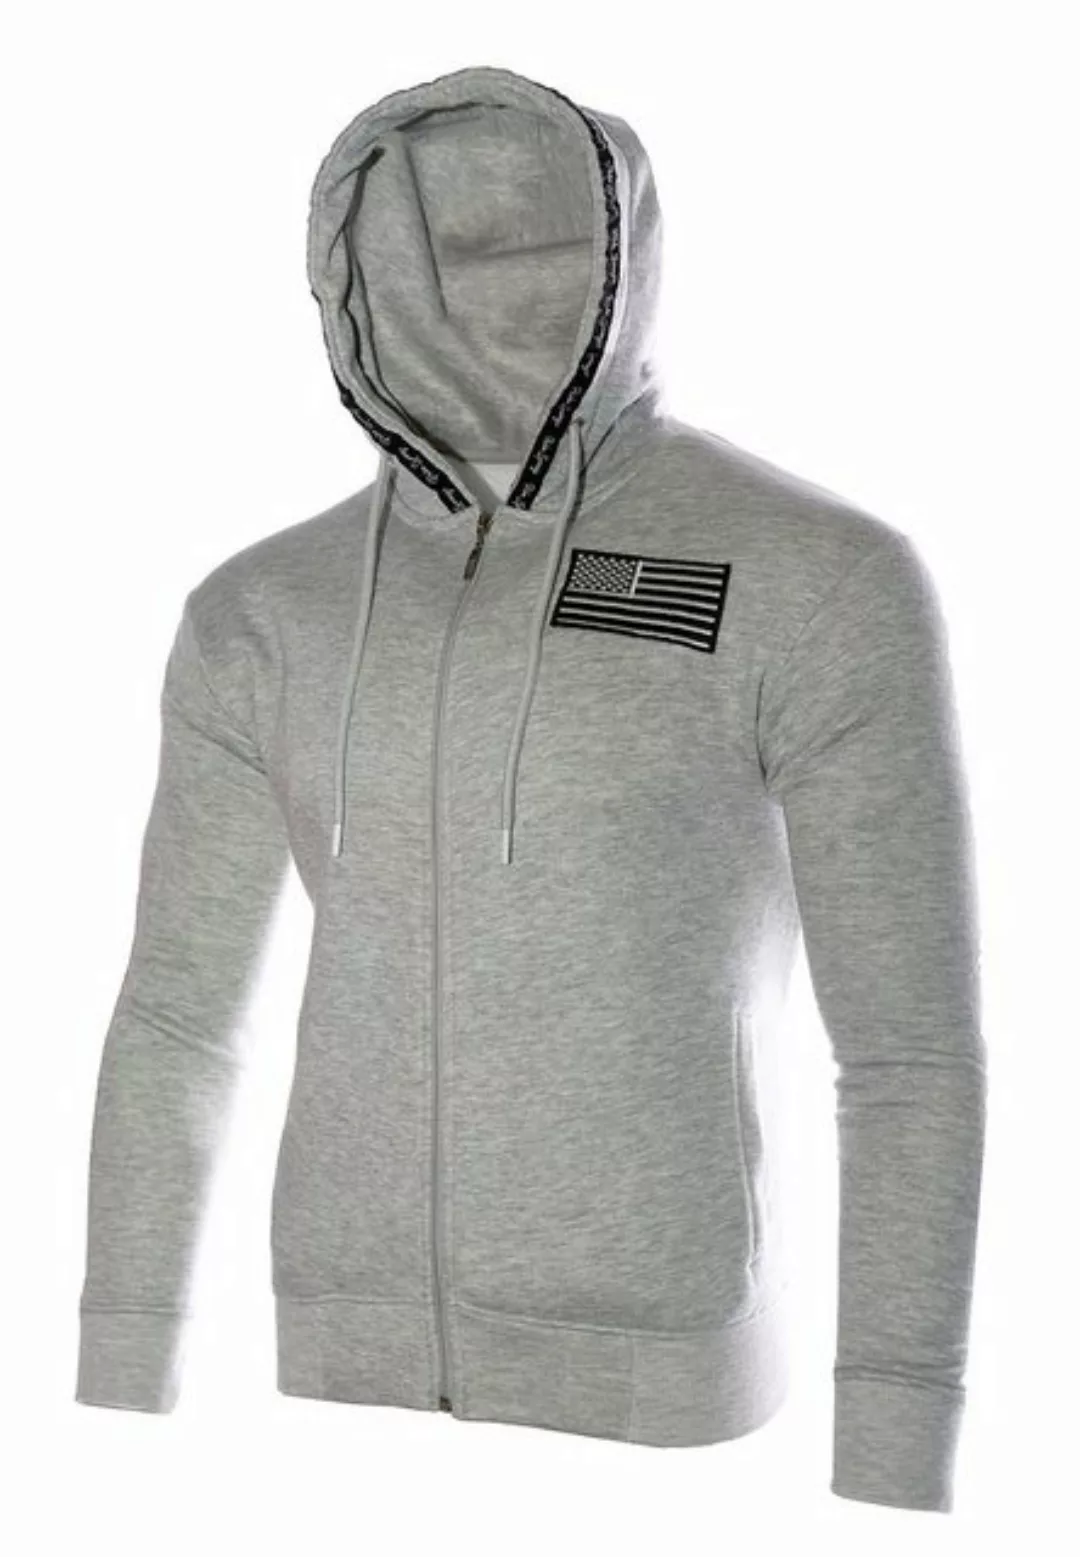 RMK Collegejacke Herren Joggingjacke Jacke USA US Sweatjacke Fitness Zipper günstig online kaufen